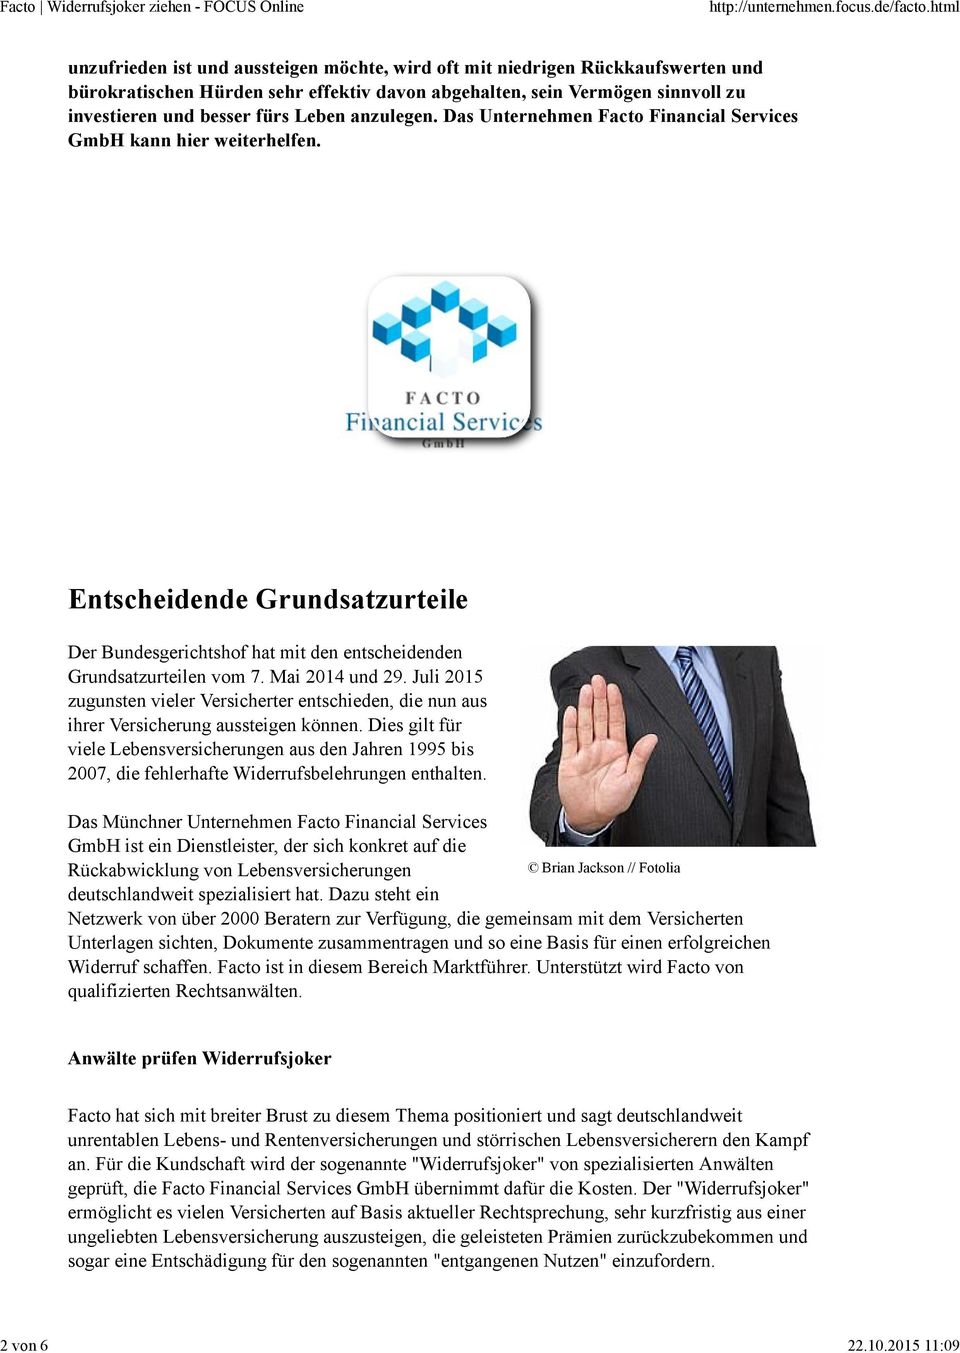 fürs Leben anzulegen. Das Unternehmen Facto Financial Services GmbH kann hier weiterhelfen. Entscheidende Grundsatzurteile Der Bundesgerichtshof hat mit den entscheidenden Grundsatzurteilen vom 7.